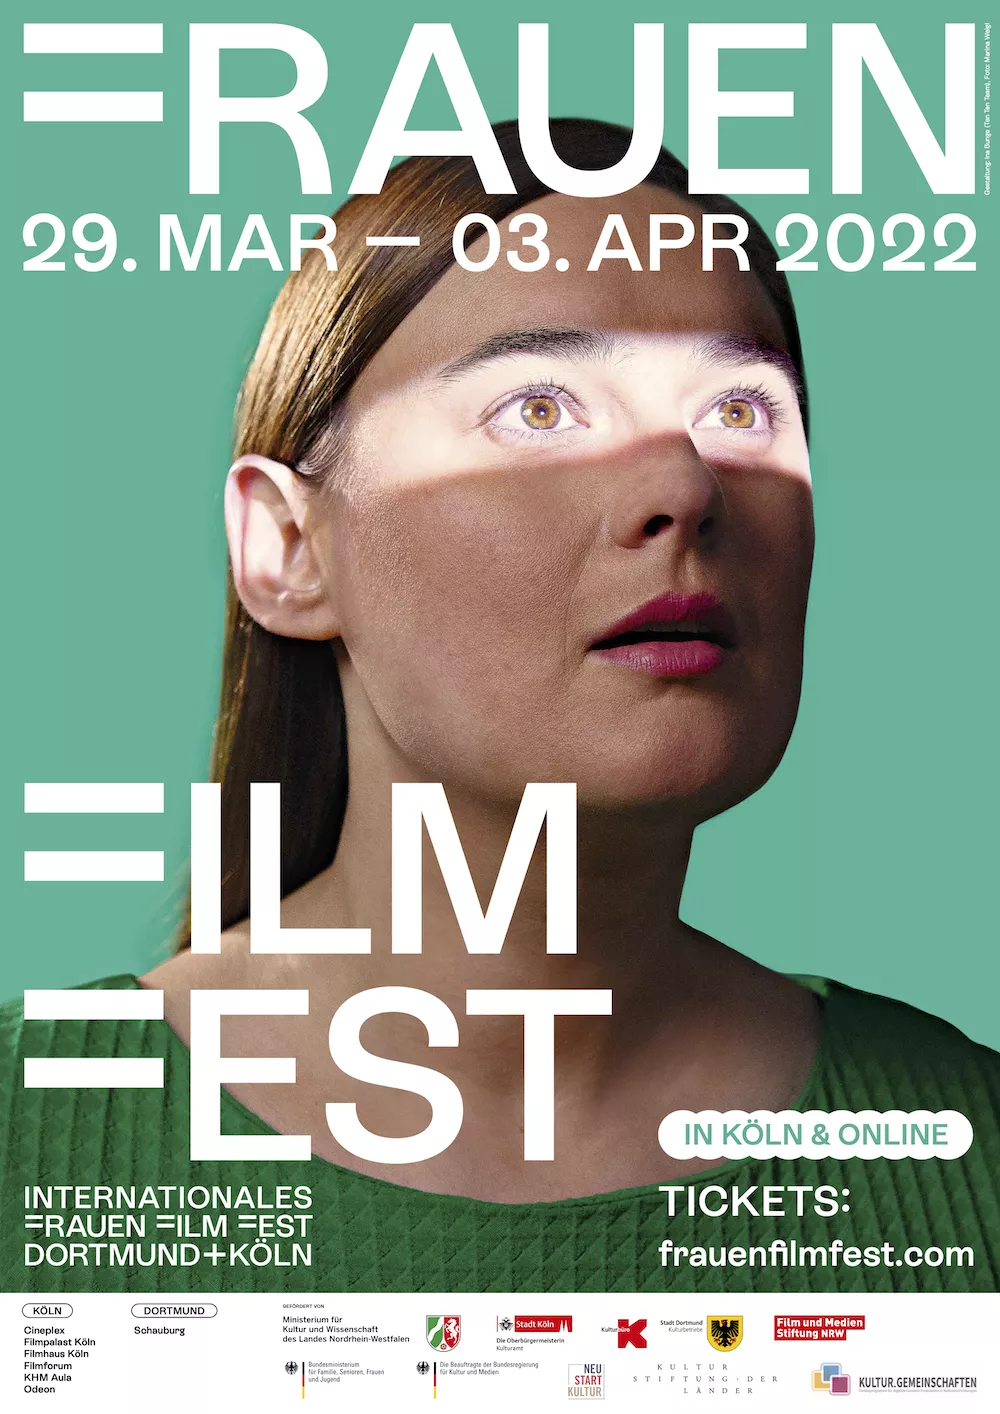 Internationales Frauen* Film Fest Dortmund+Köln